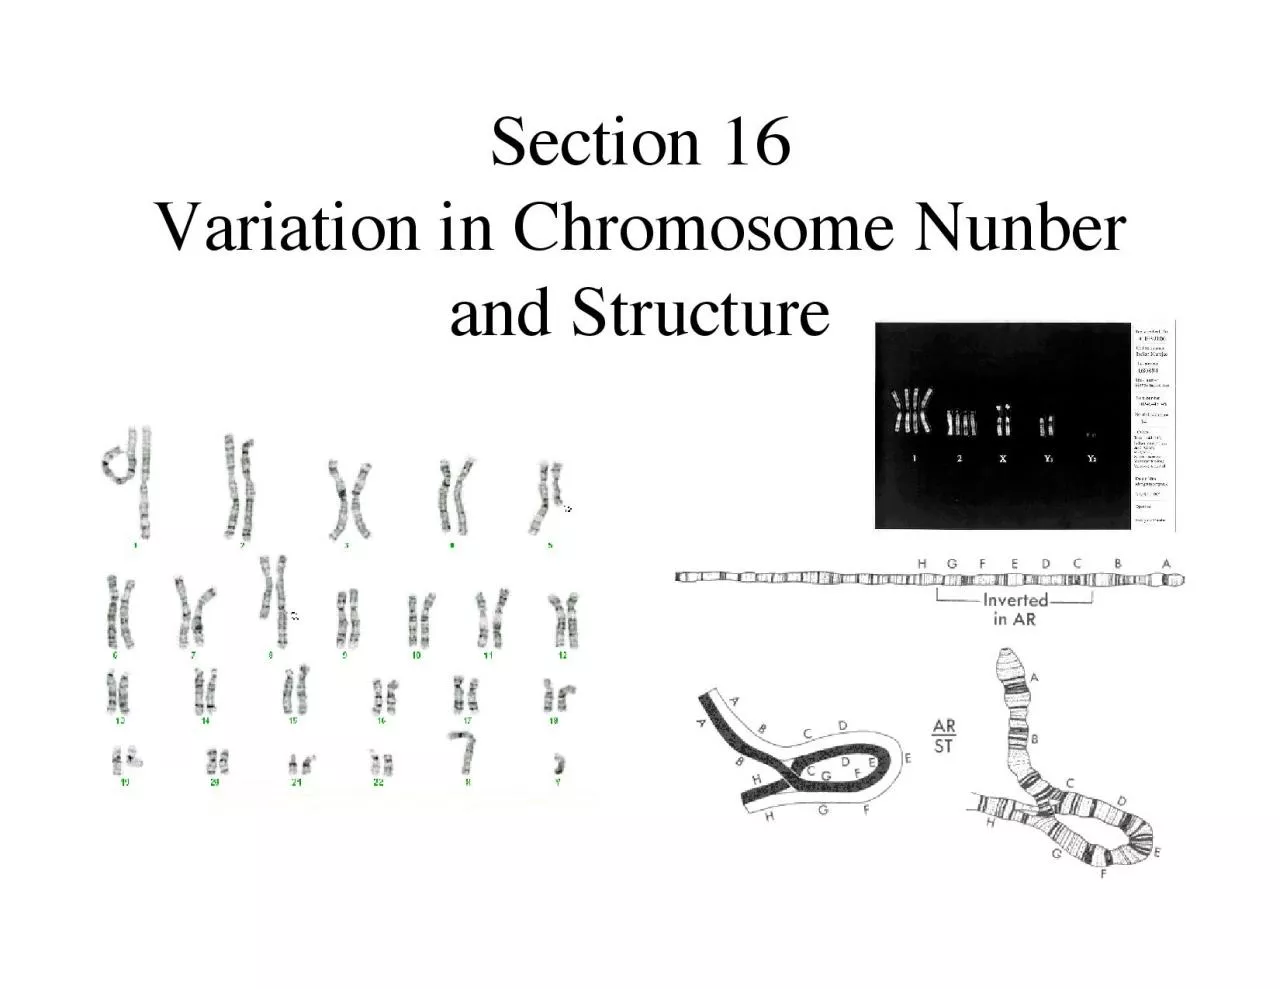 partial chromosome sets